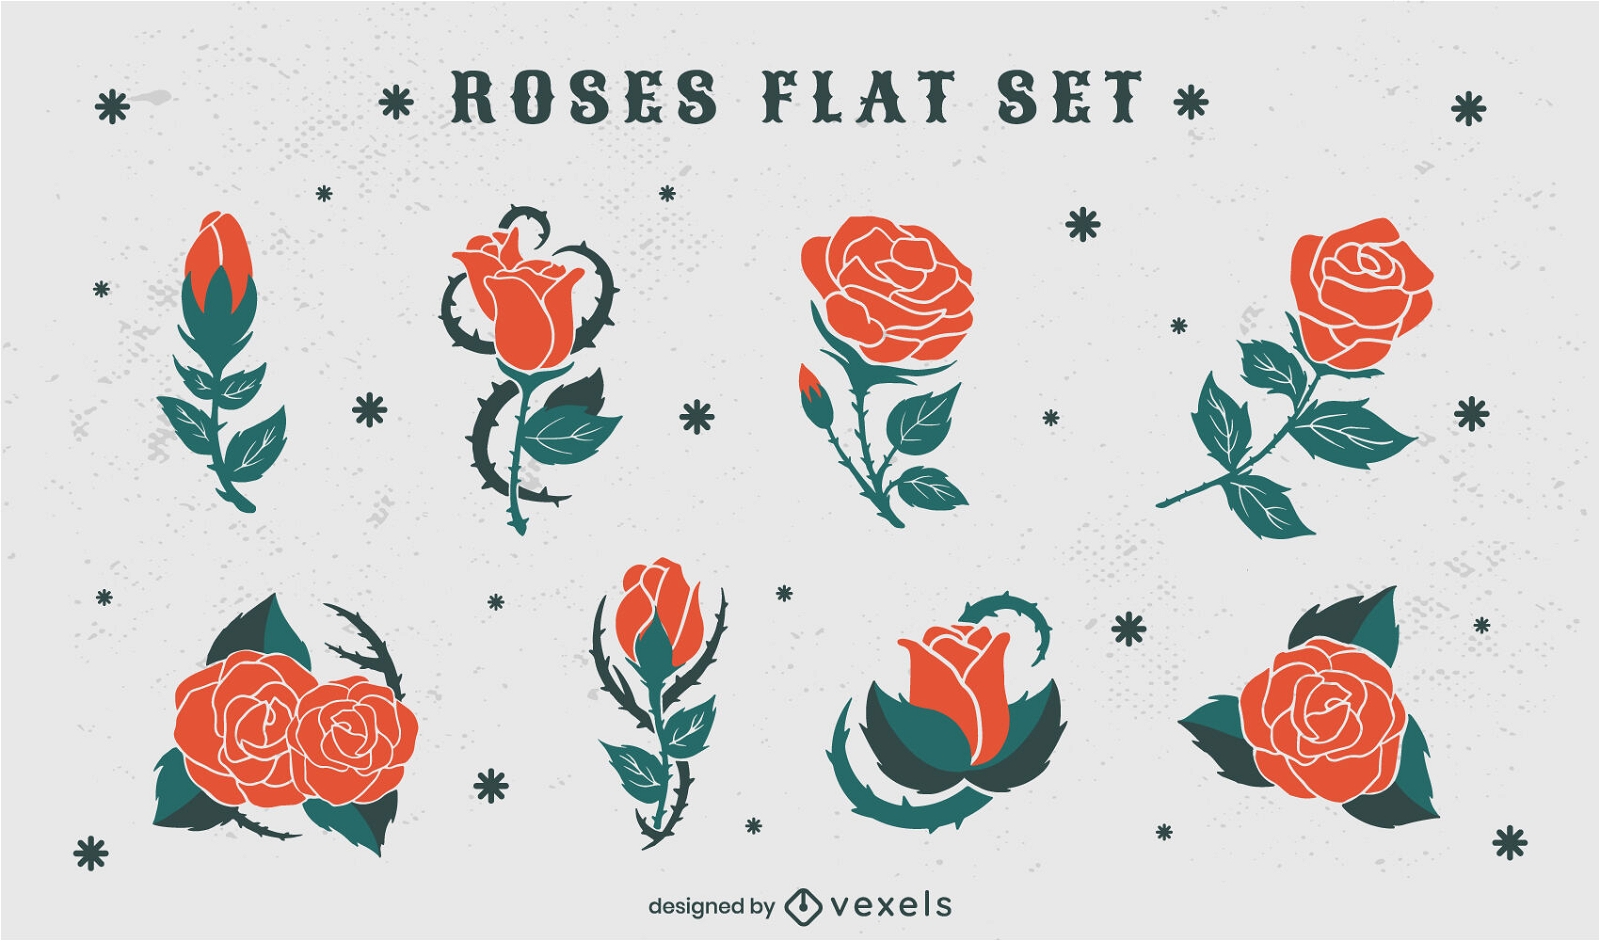 Roses flat set